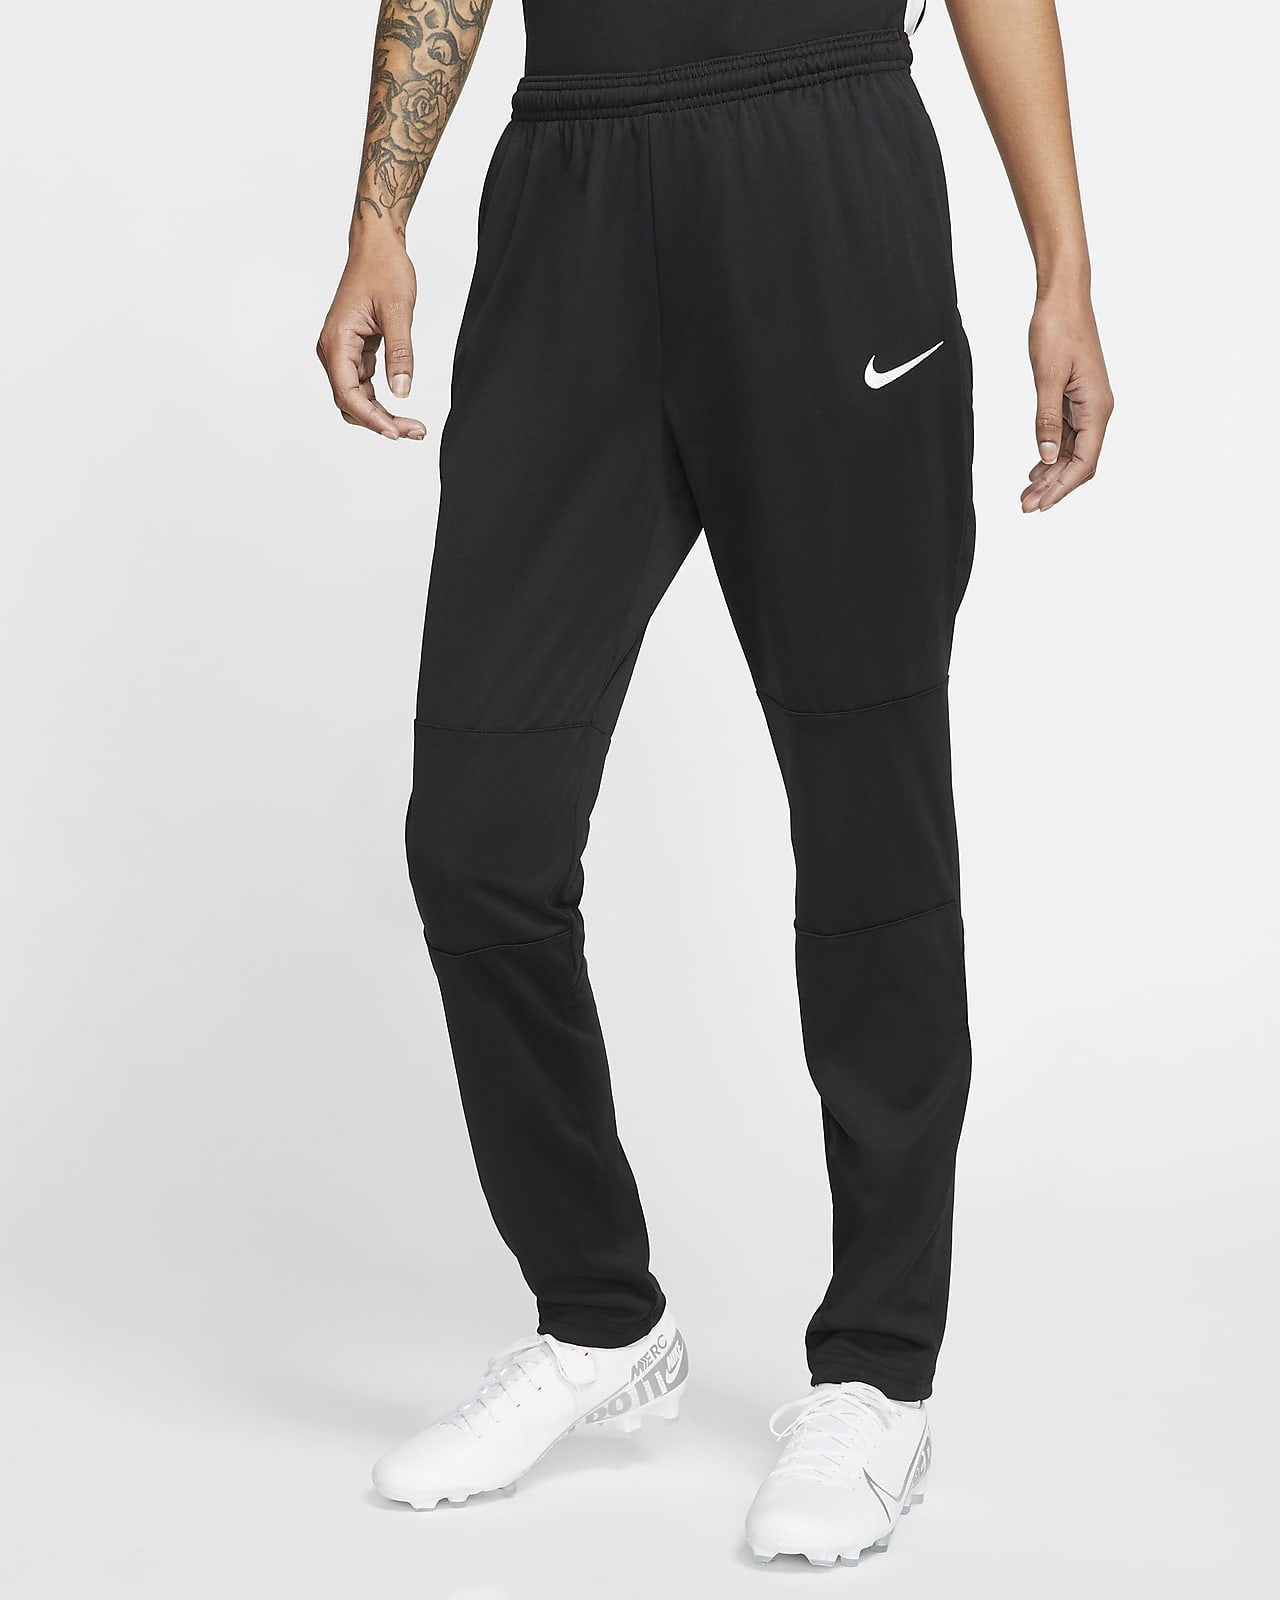 Pantalones de fútbol para mujer Dri-FIT. Nike.com